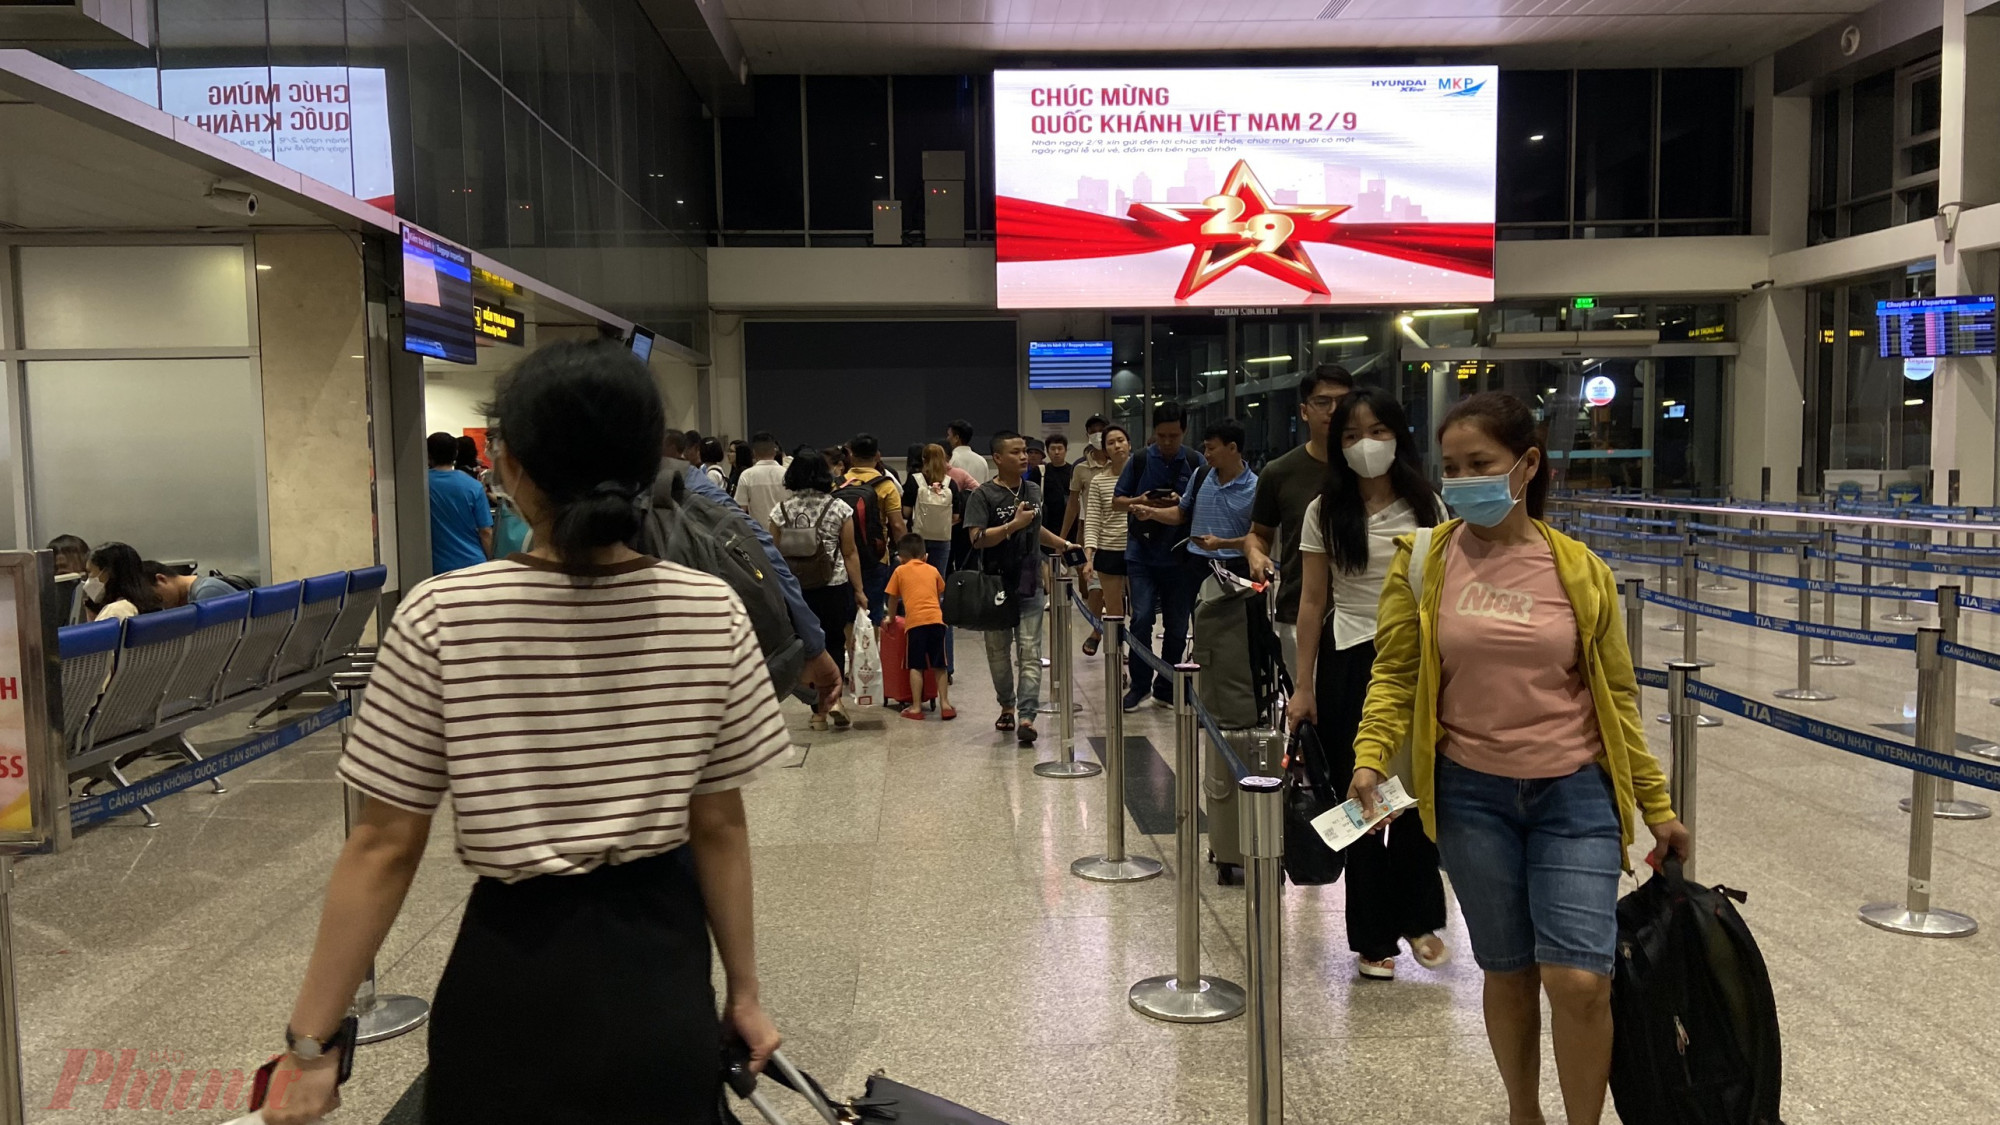 Tối 31-8, người dân bắt đầu đổ về sân bay Tân Sơn Nhất để nghỉ lễ 2-9. Theo ghi nhận, lượng khách không quá đông, các thủ tục bay diễn ra nhanh chóng.